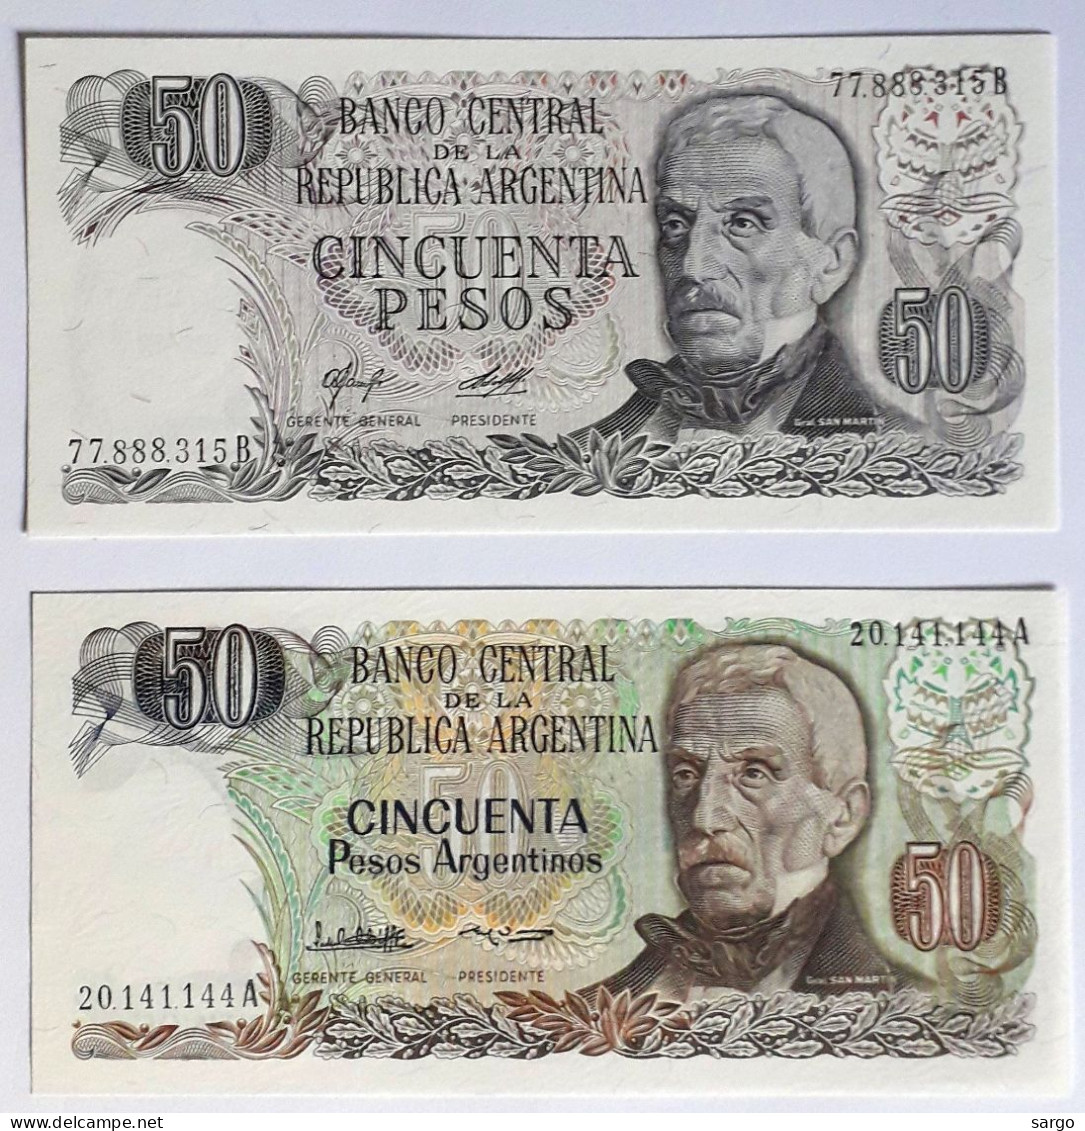 ARGENTINA - 50 PESOS (1976-78) P 301, 50 PESOS (1983-75) P 314  UNC - BANKNOTES - PAPER MONEY - CARTAMONETA - - Argentine